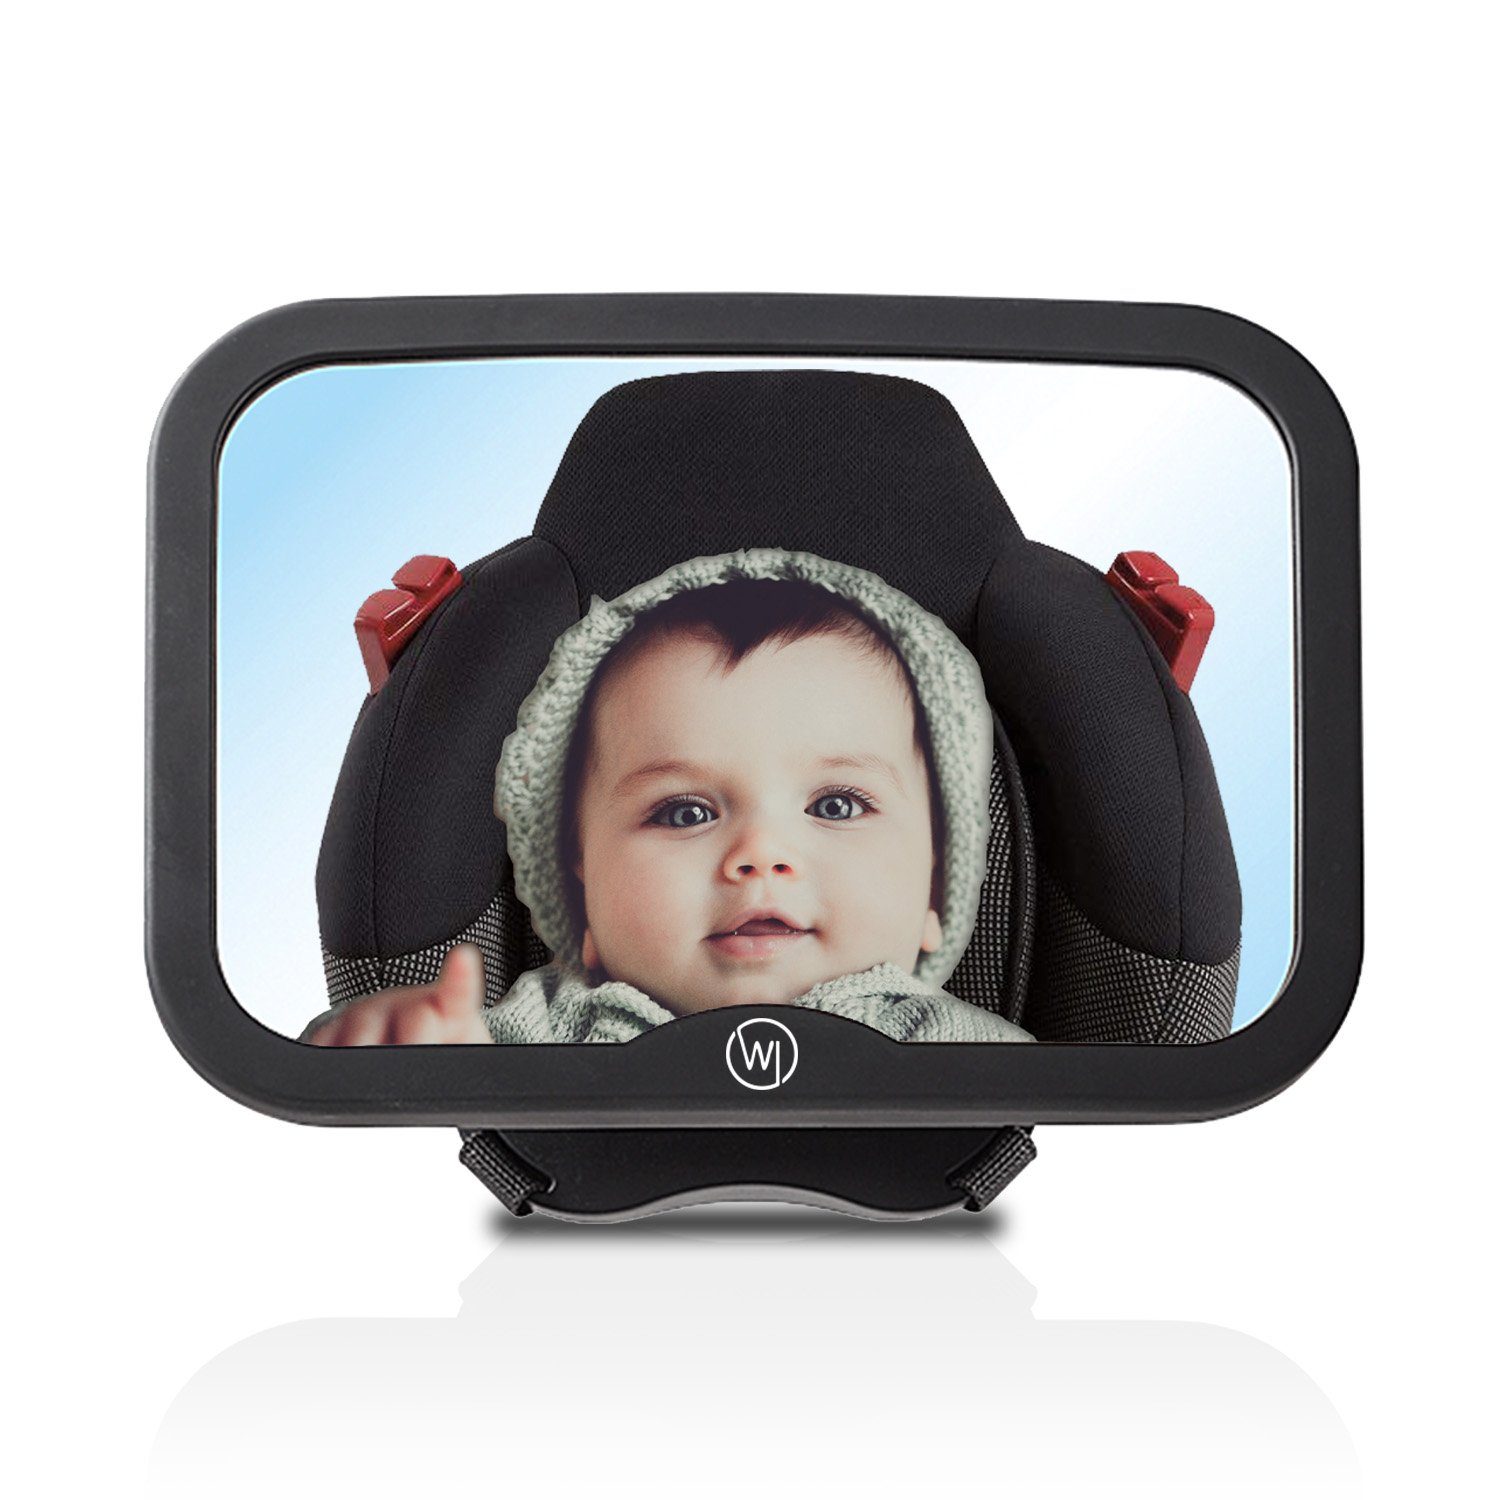 KFZ Baby Innenspiegel Auto Kinder Rückspiegel Kindersitz Spiegel